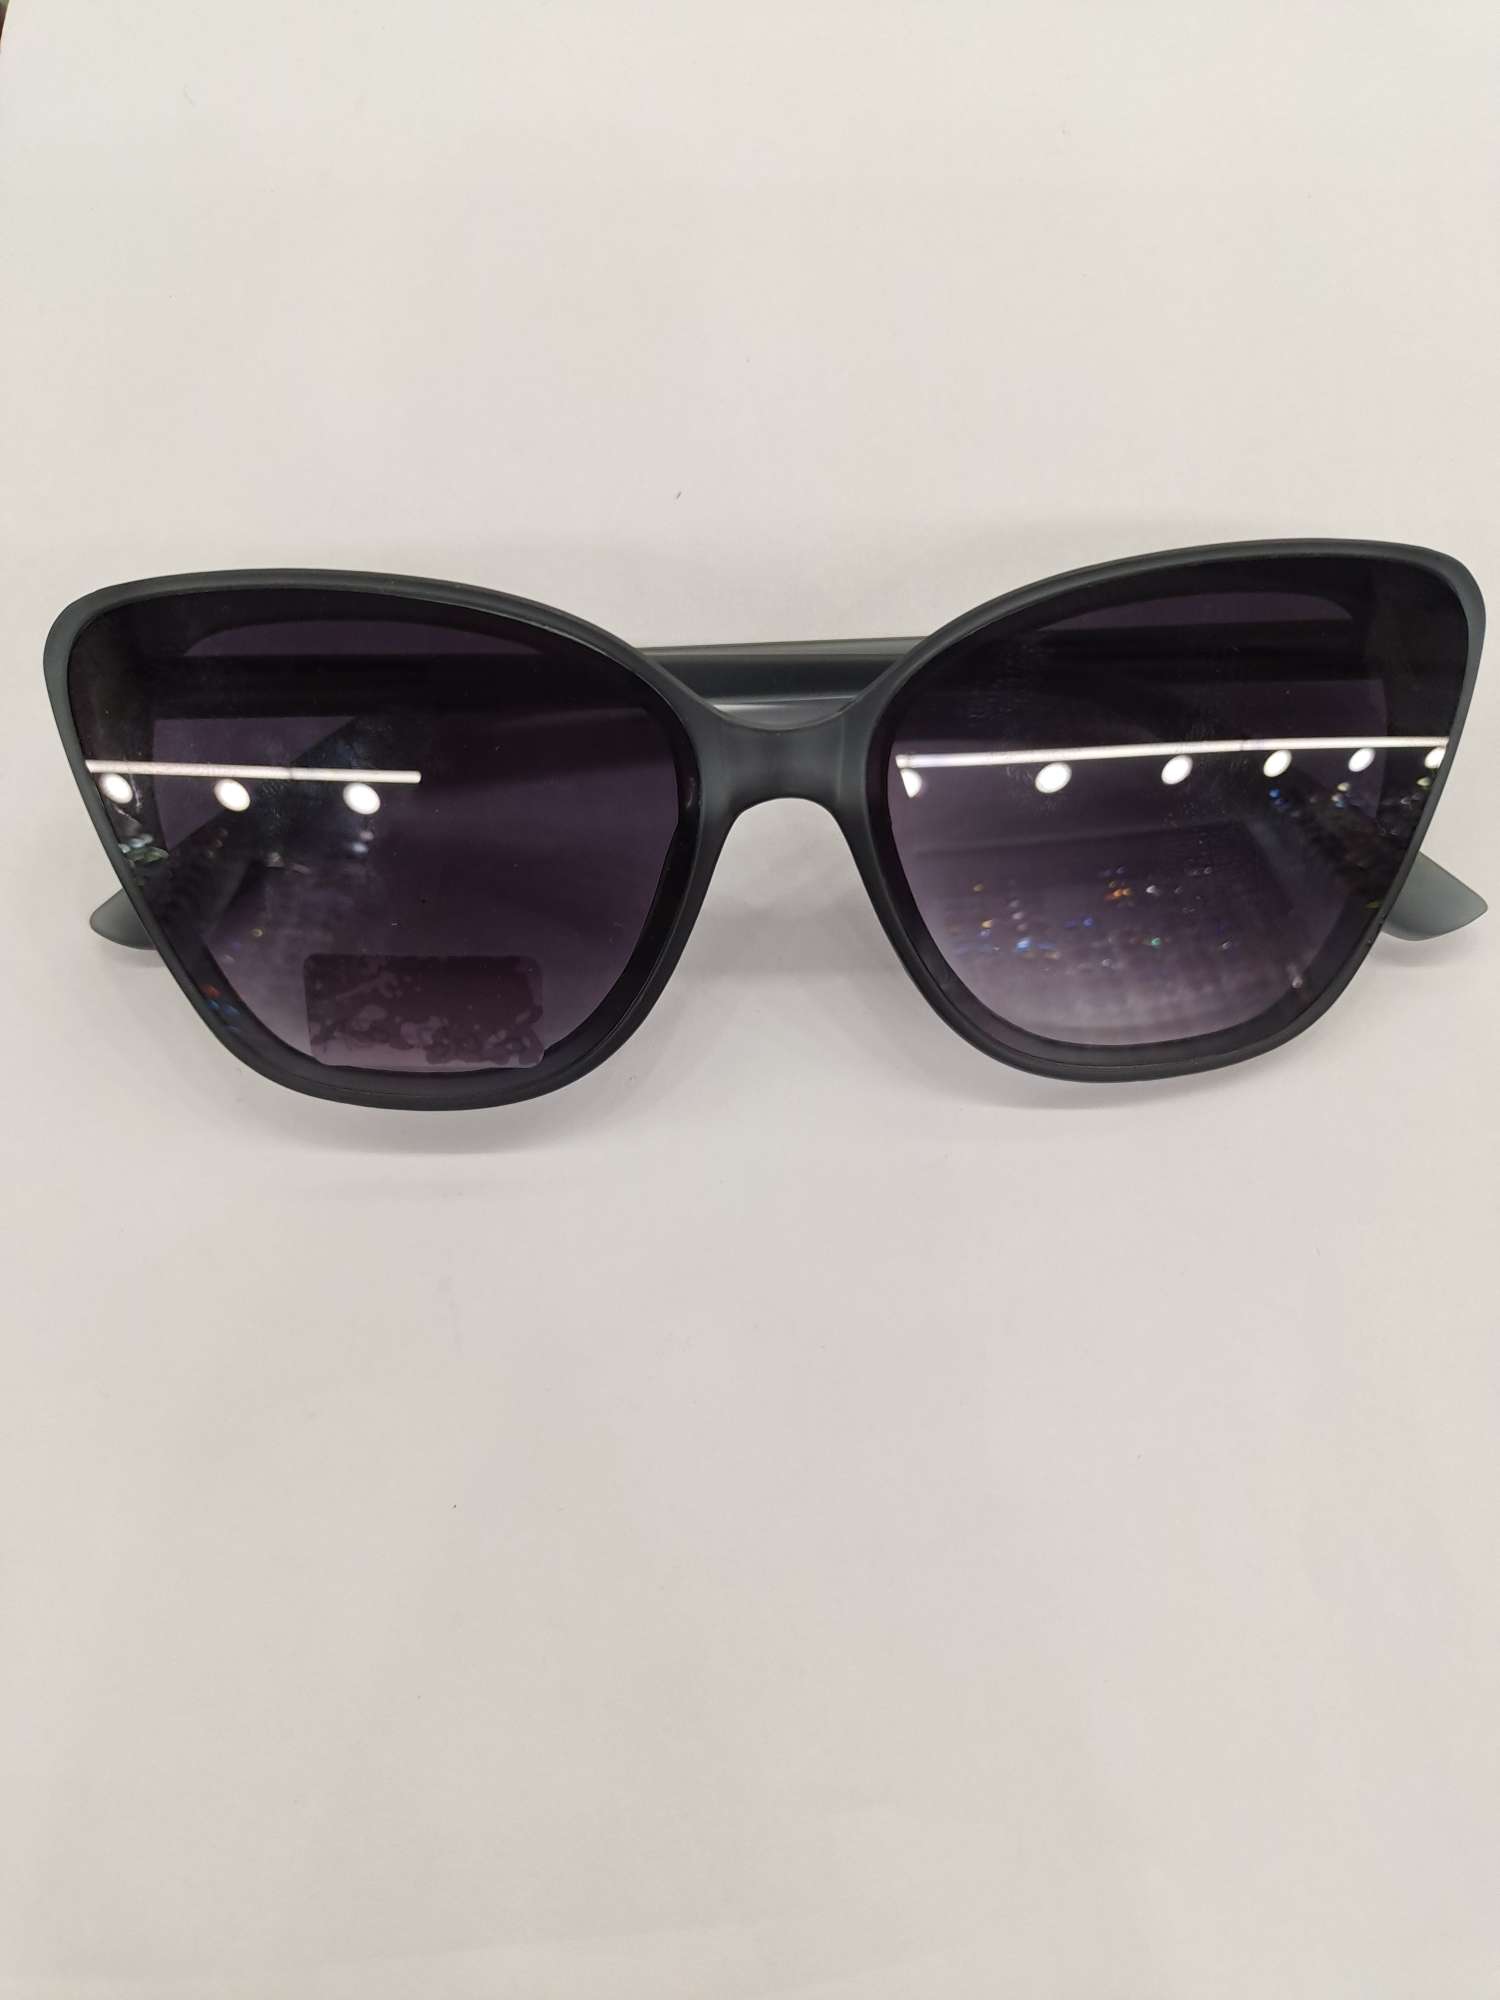 G62墨镜太阳镜男女可戴防紫外线保护眼睛时尚潮流图